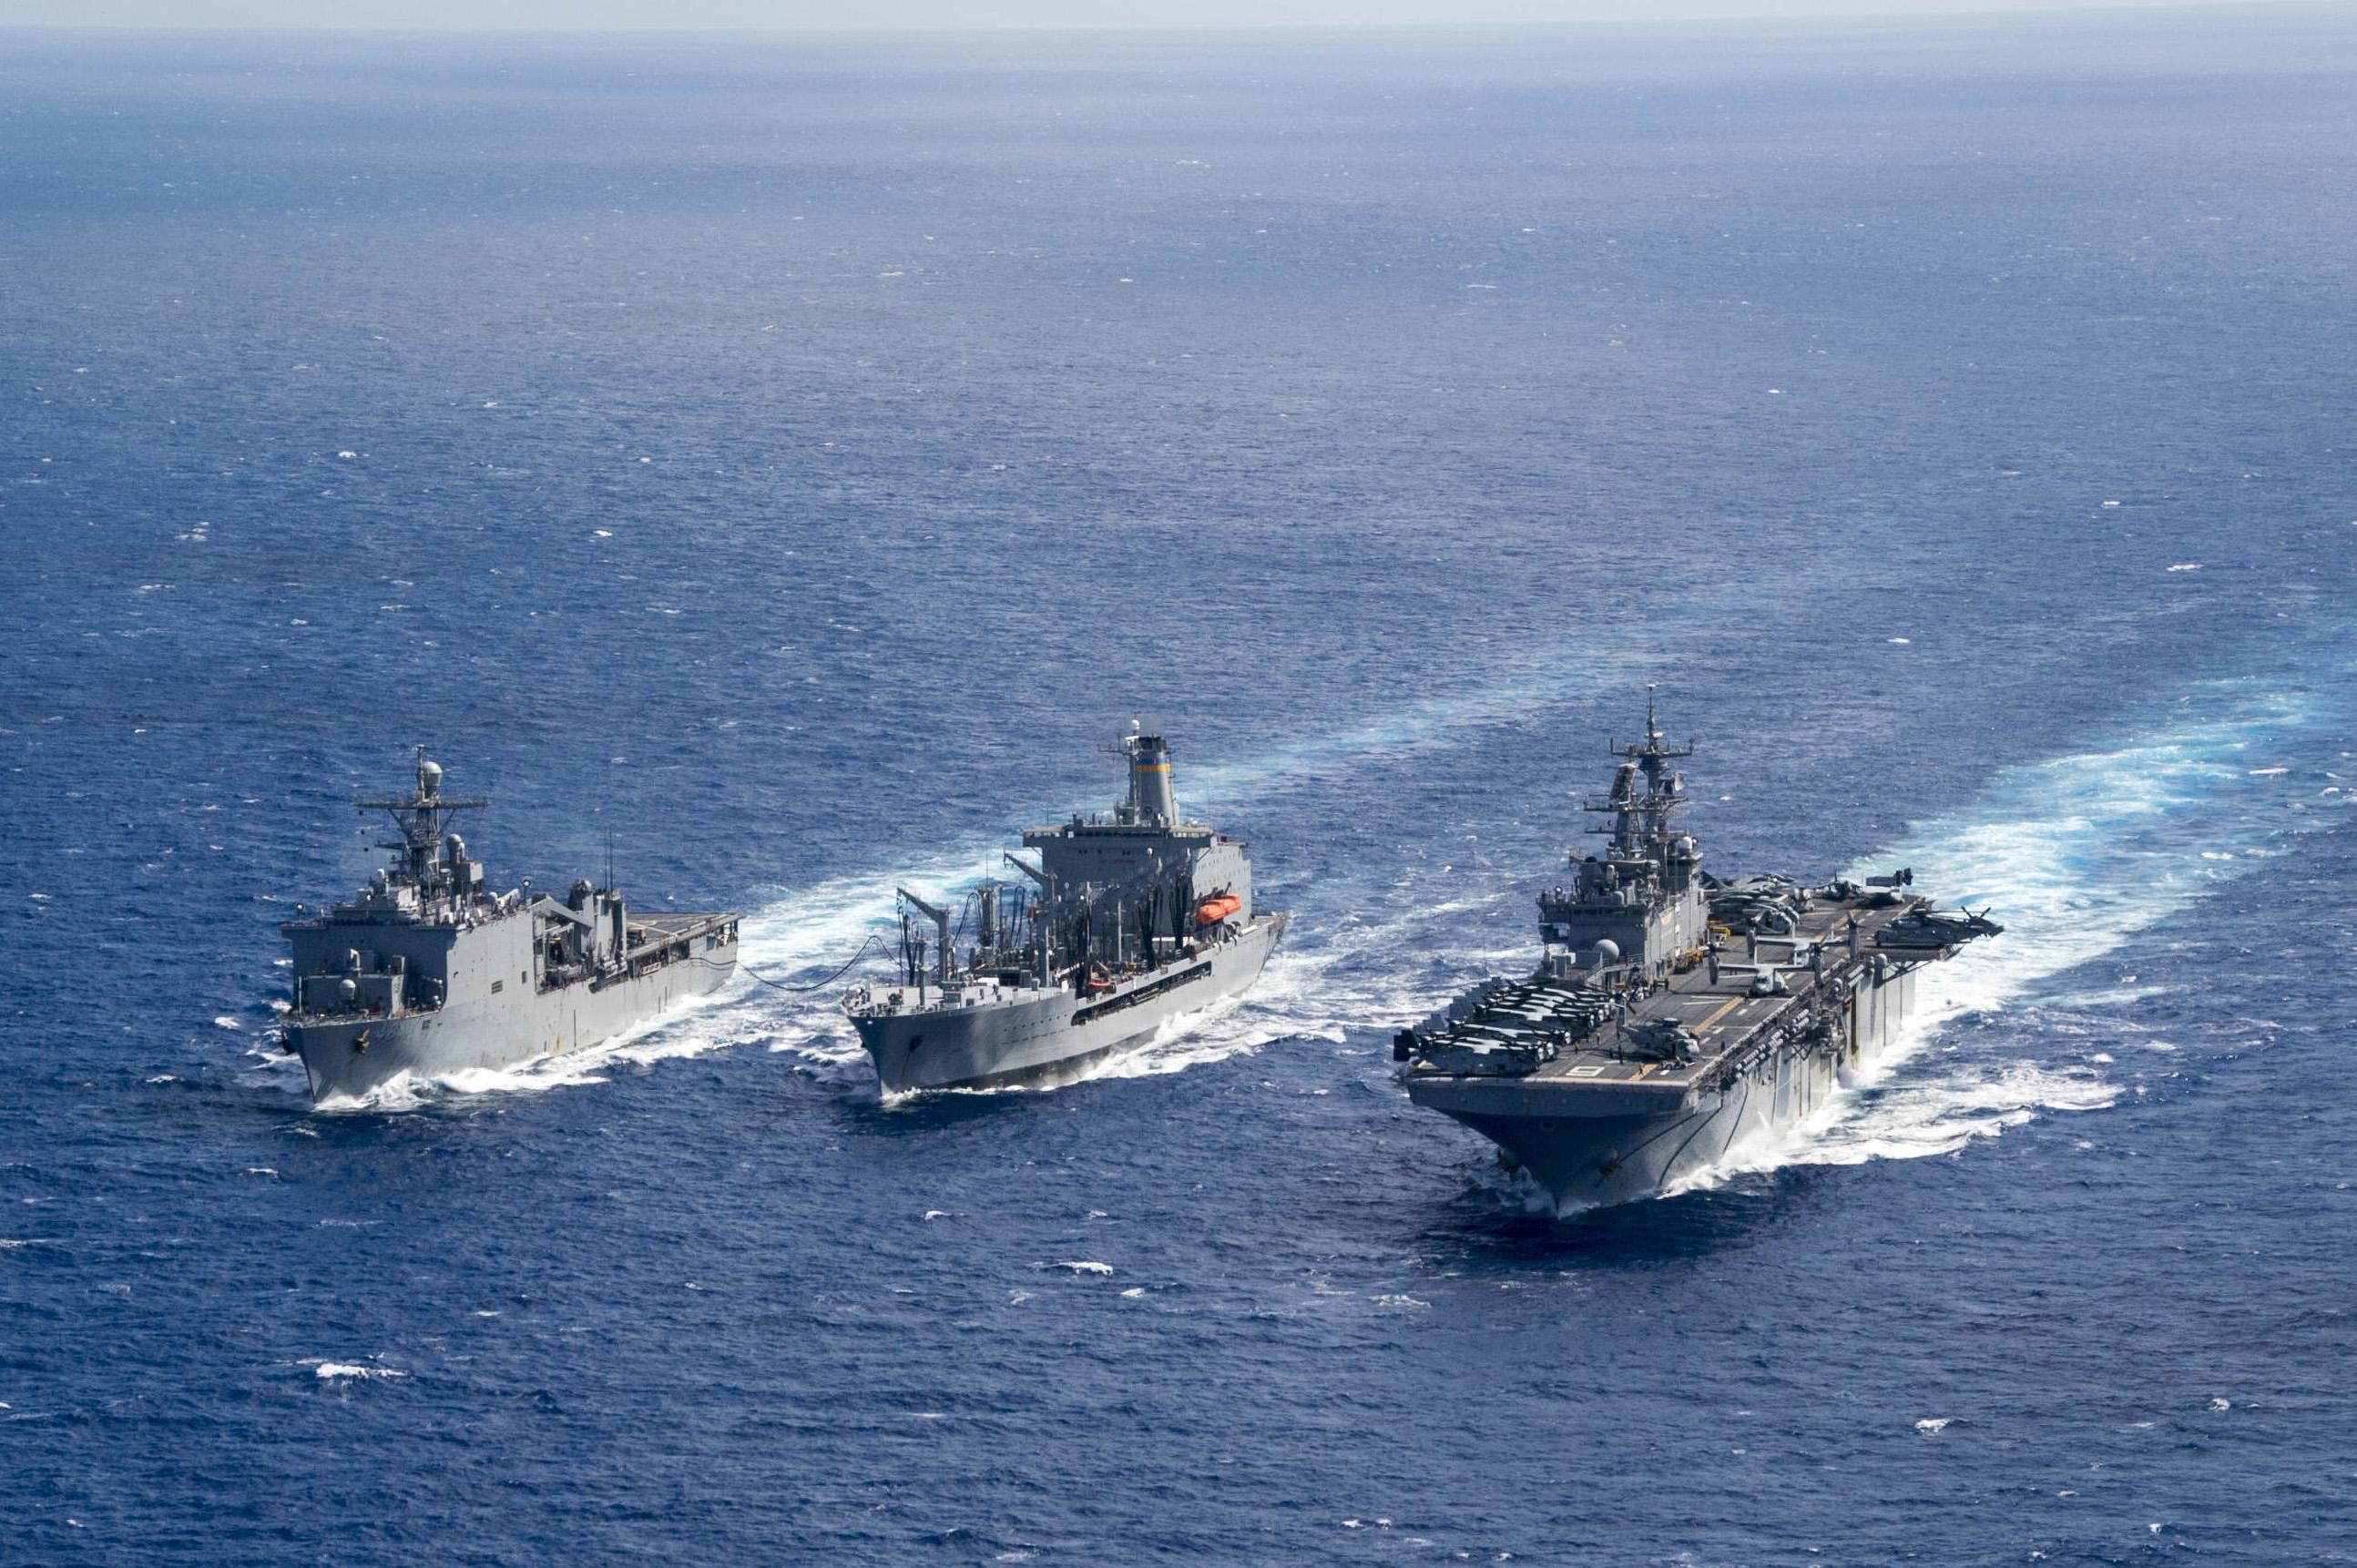 独家丨海军055型万吨级驱逐舰南昌舰在山东青岛正式入列-国际在线